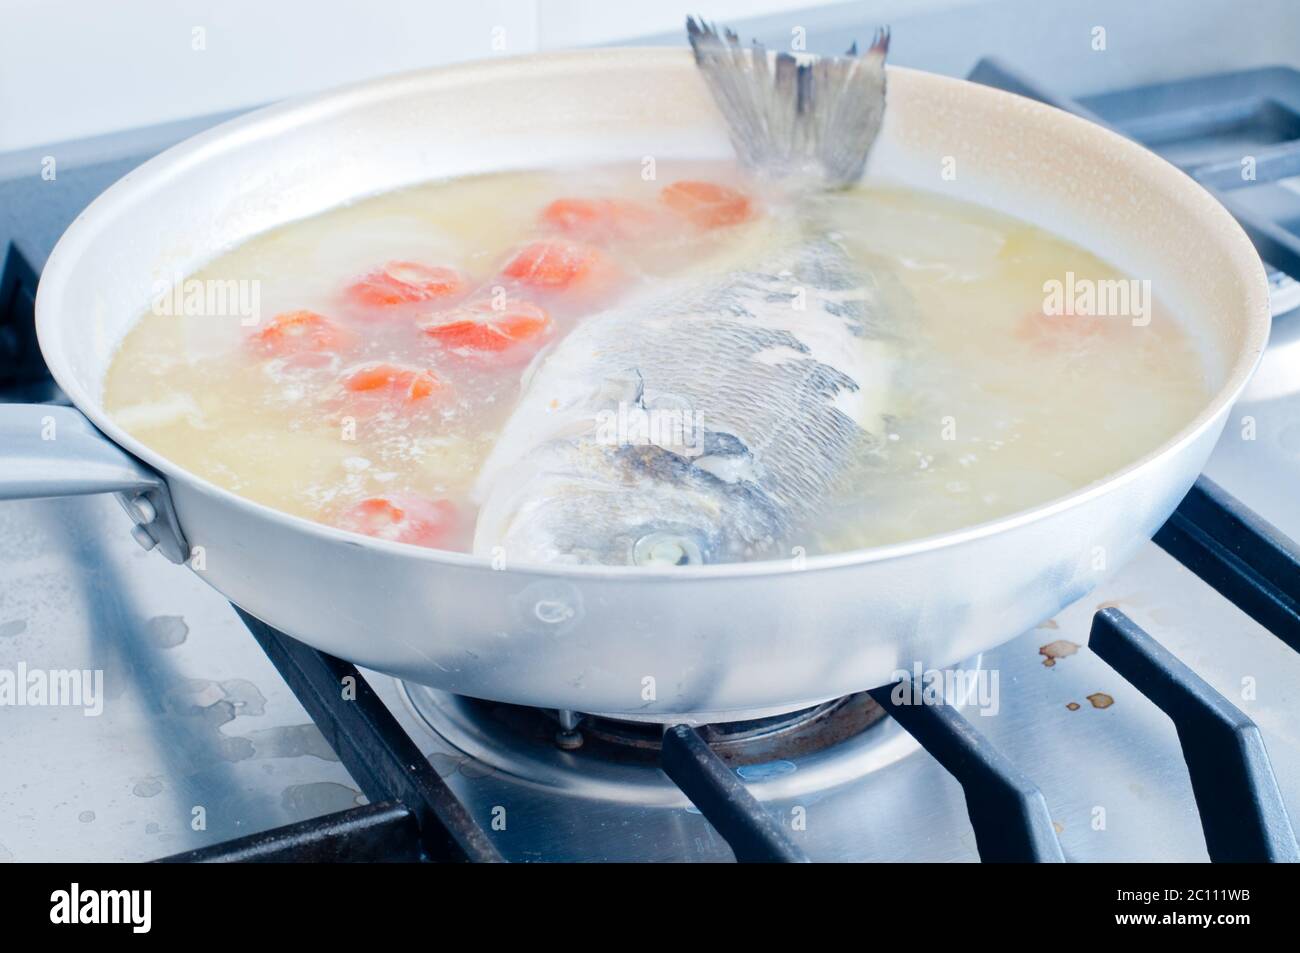 Orate di pesce cotto in acqua pazza, ricetta tipica del sud Italia con acqua di mare, pomodori, cipolle e aglio Foto Stock